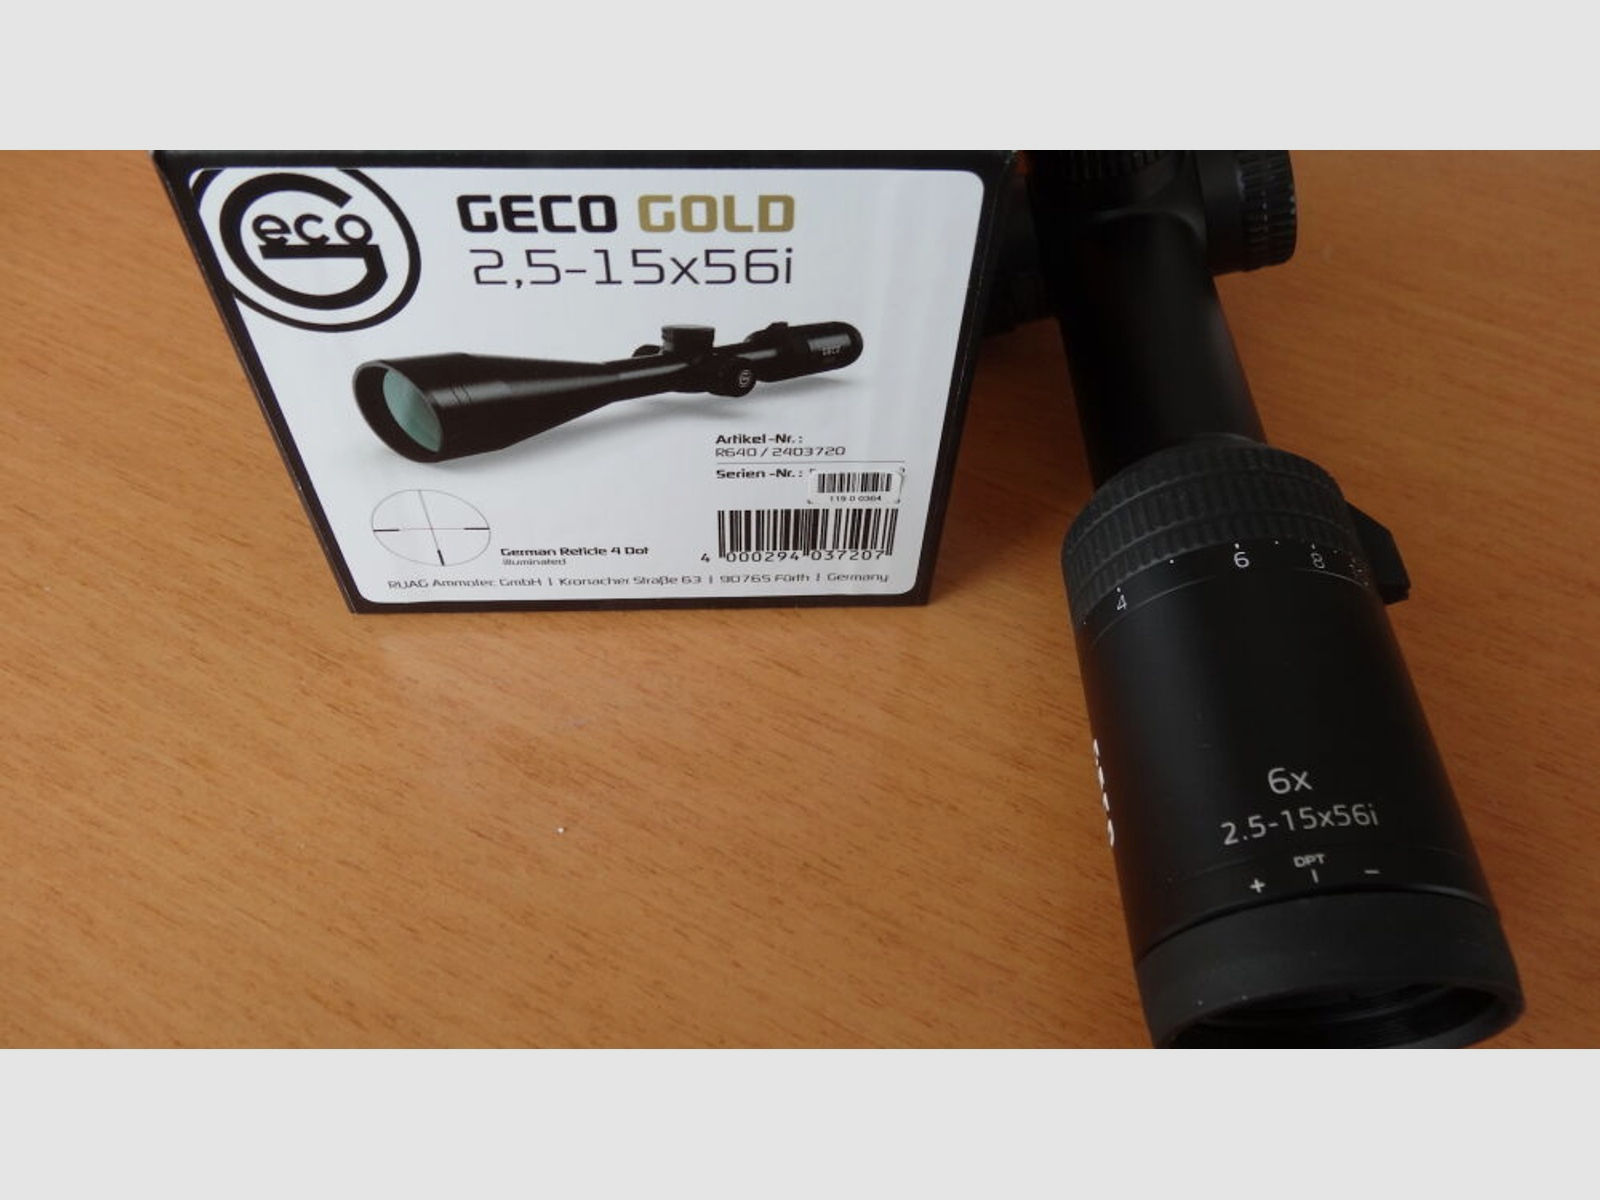 GECO	 Geco Zielfernrohr Gold 2,5-15x56i, Abs. 4 beleuchtet